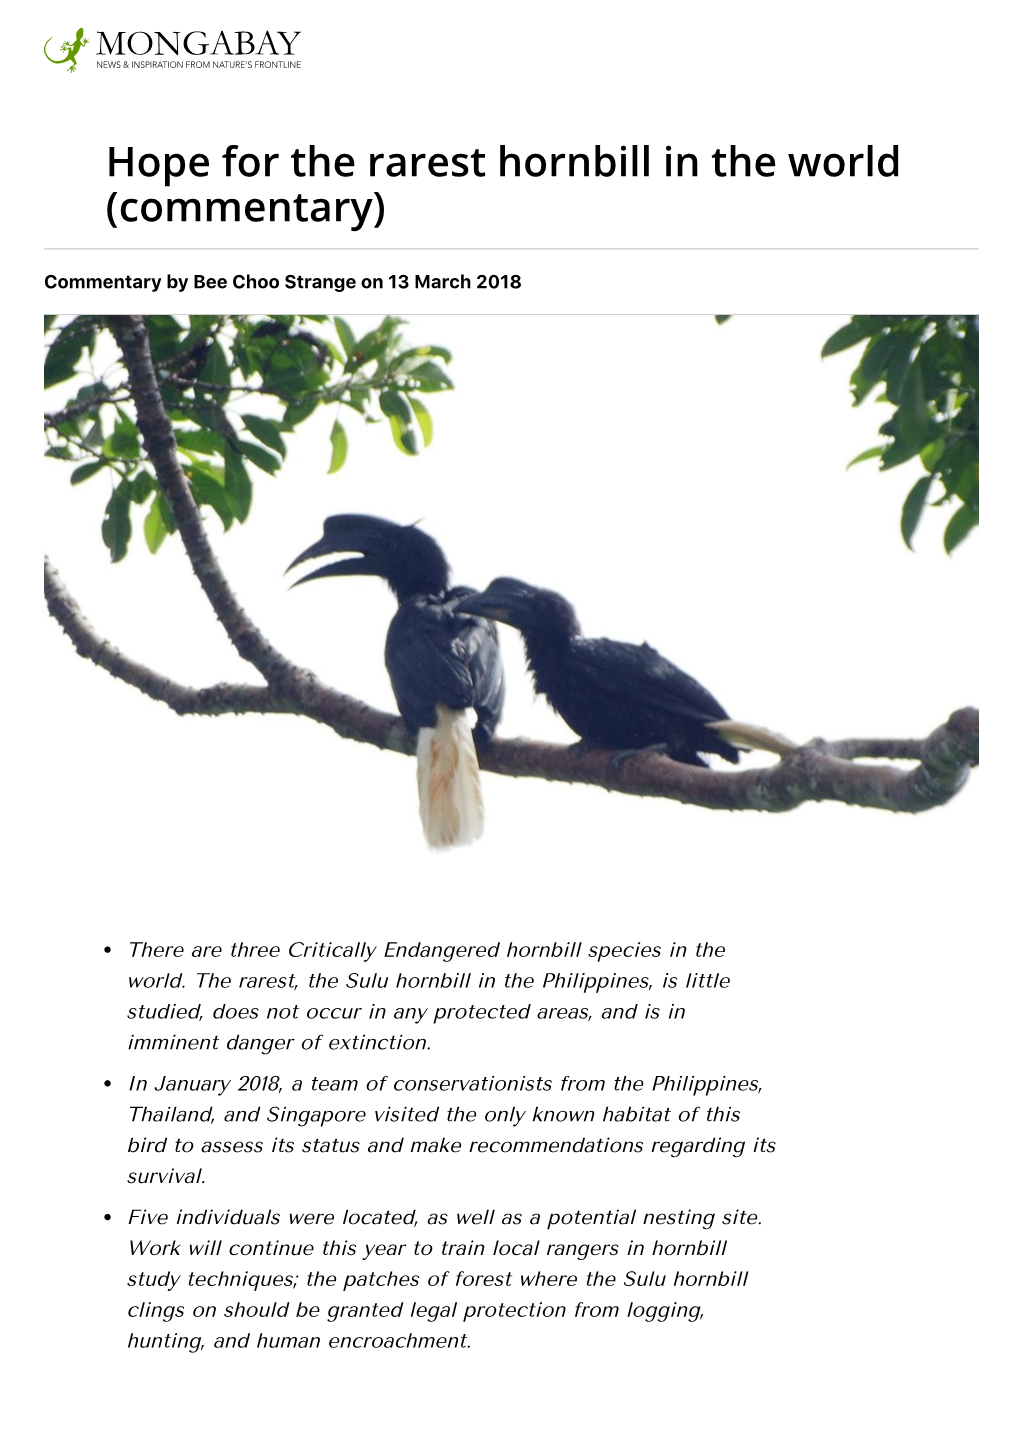 Hope for the Rarest Hornbill in the World (Commentary)